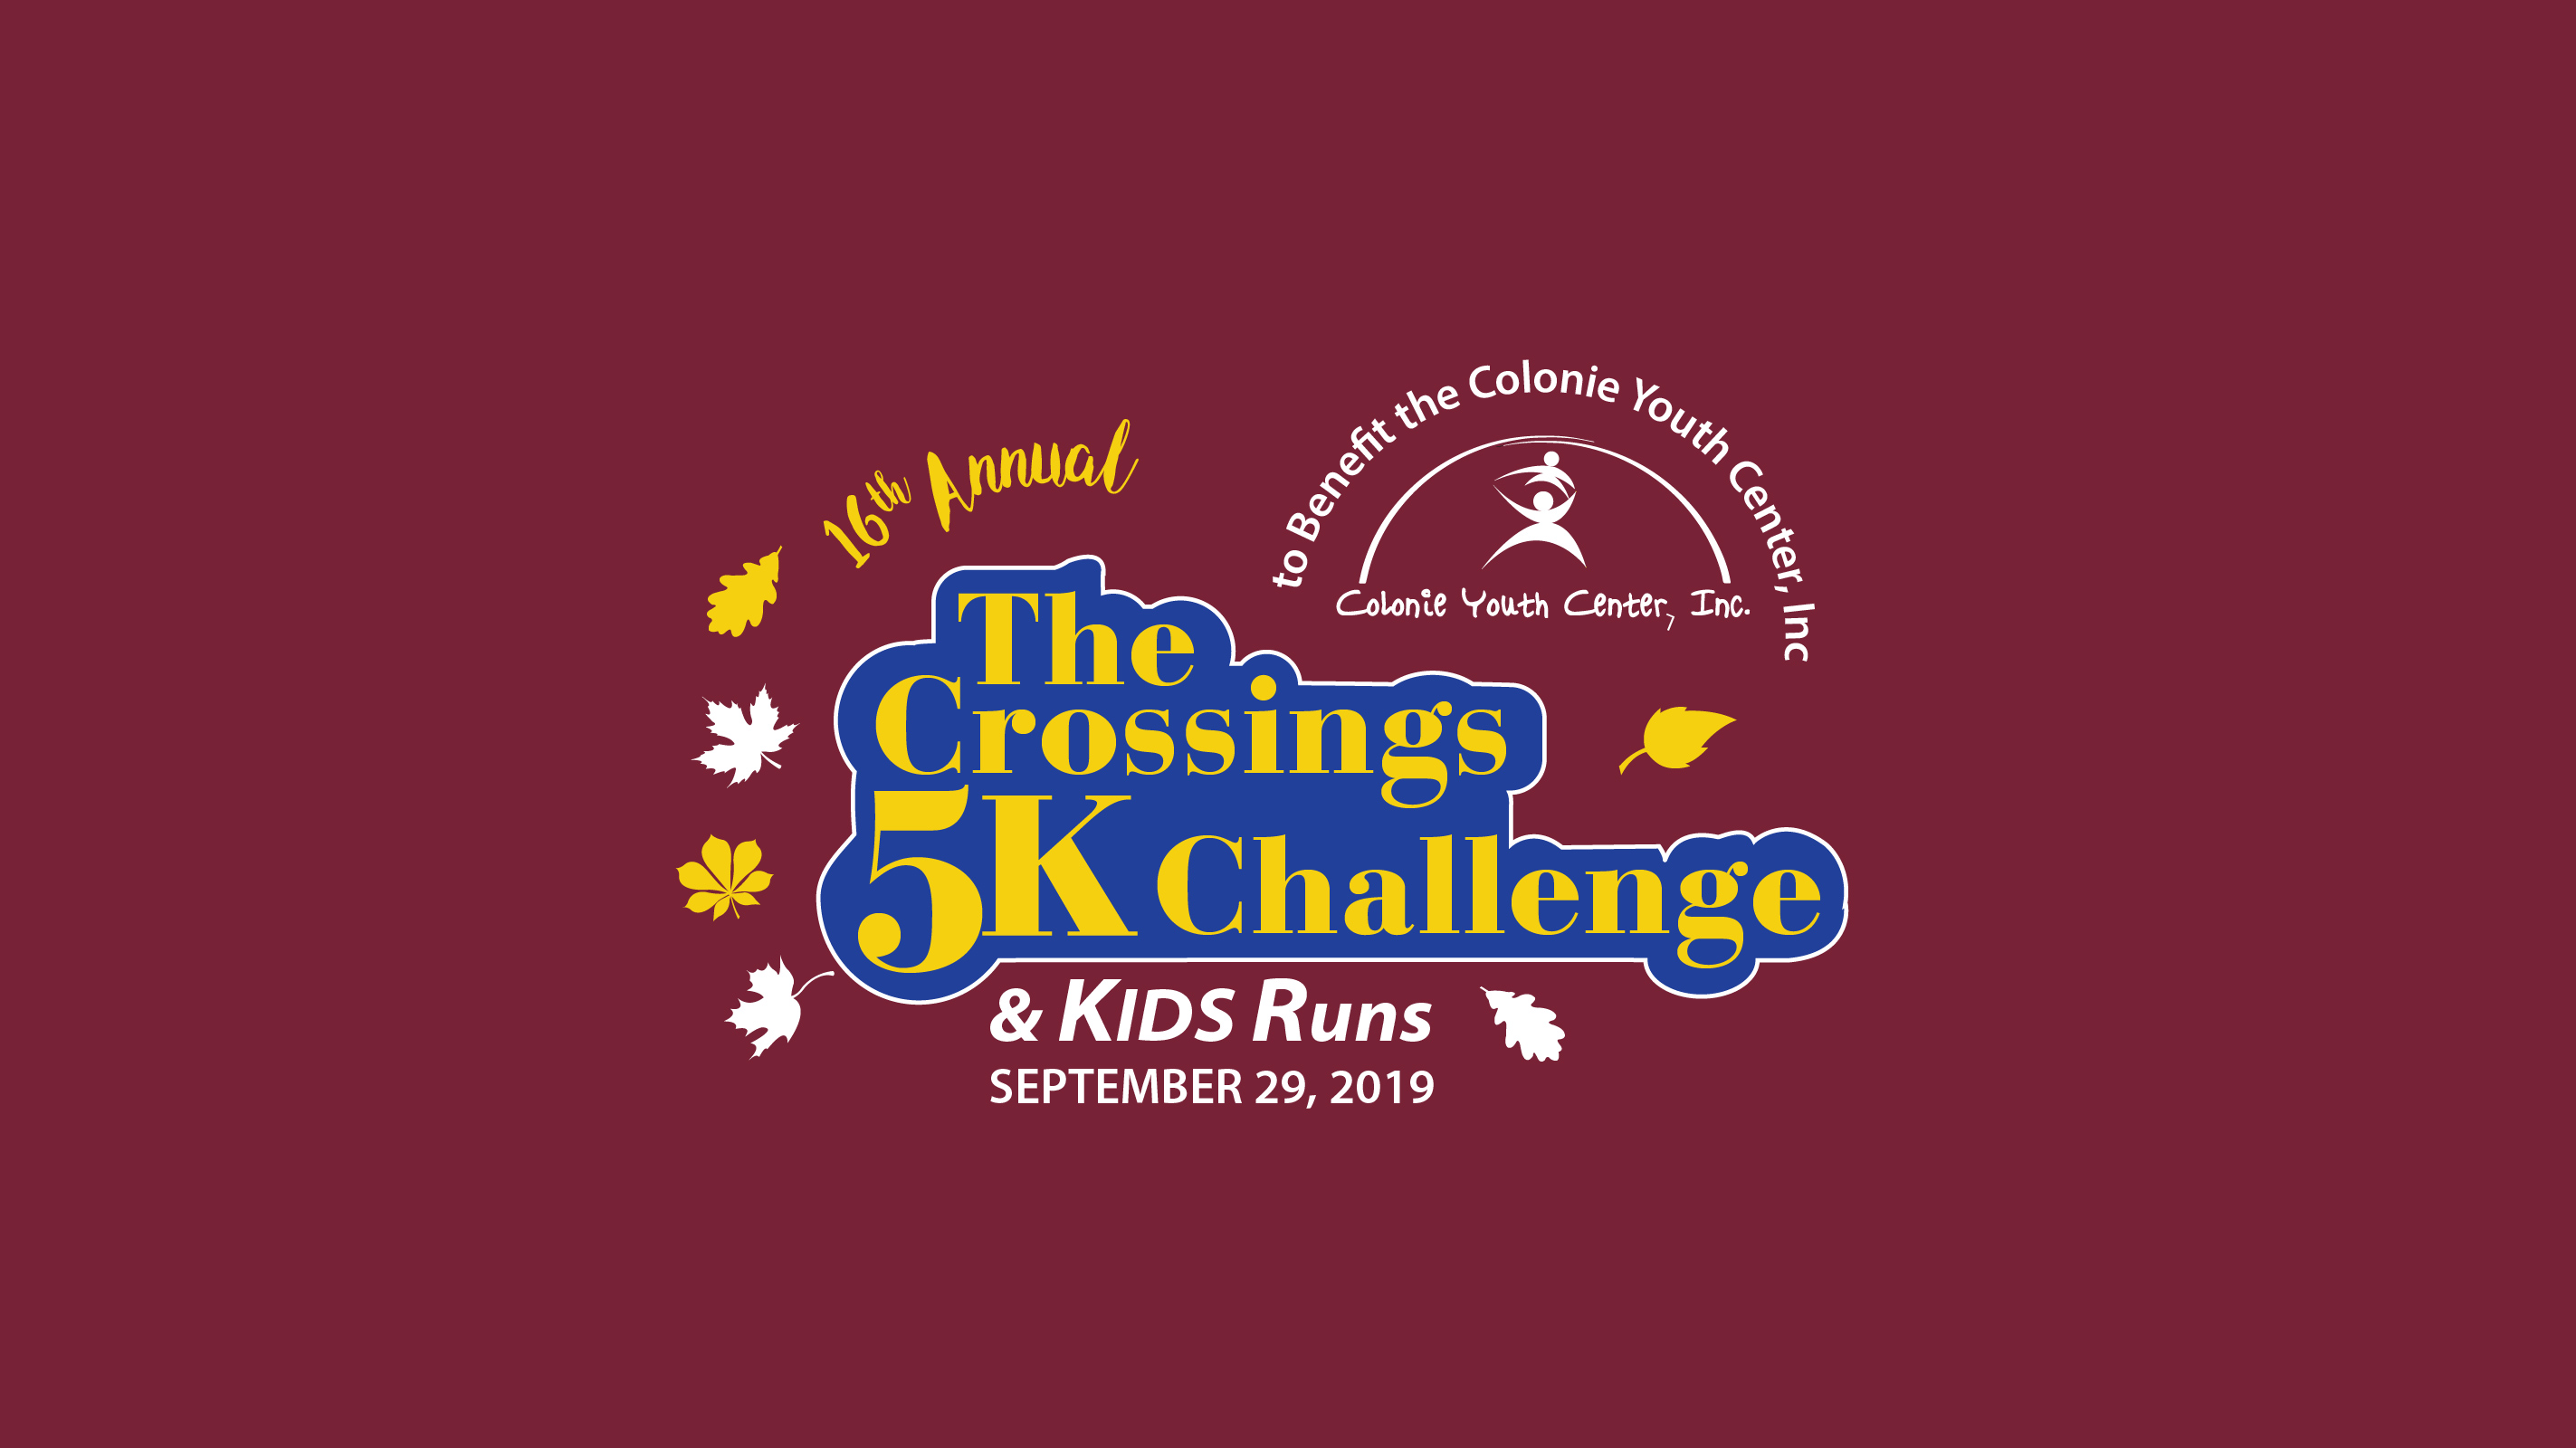 Crossings 5K Challenge & Kids Runs logo on RaceRaves